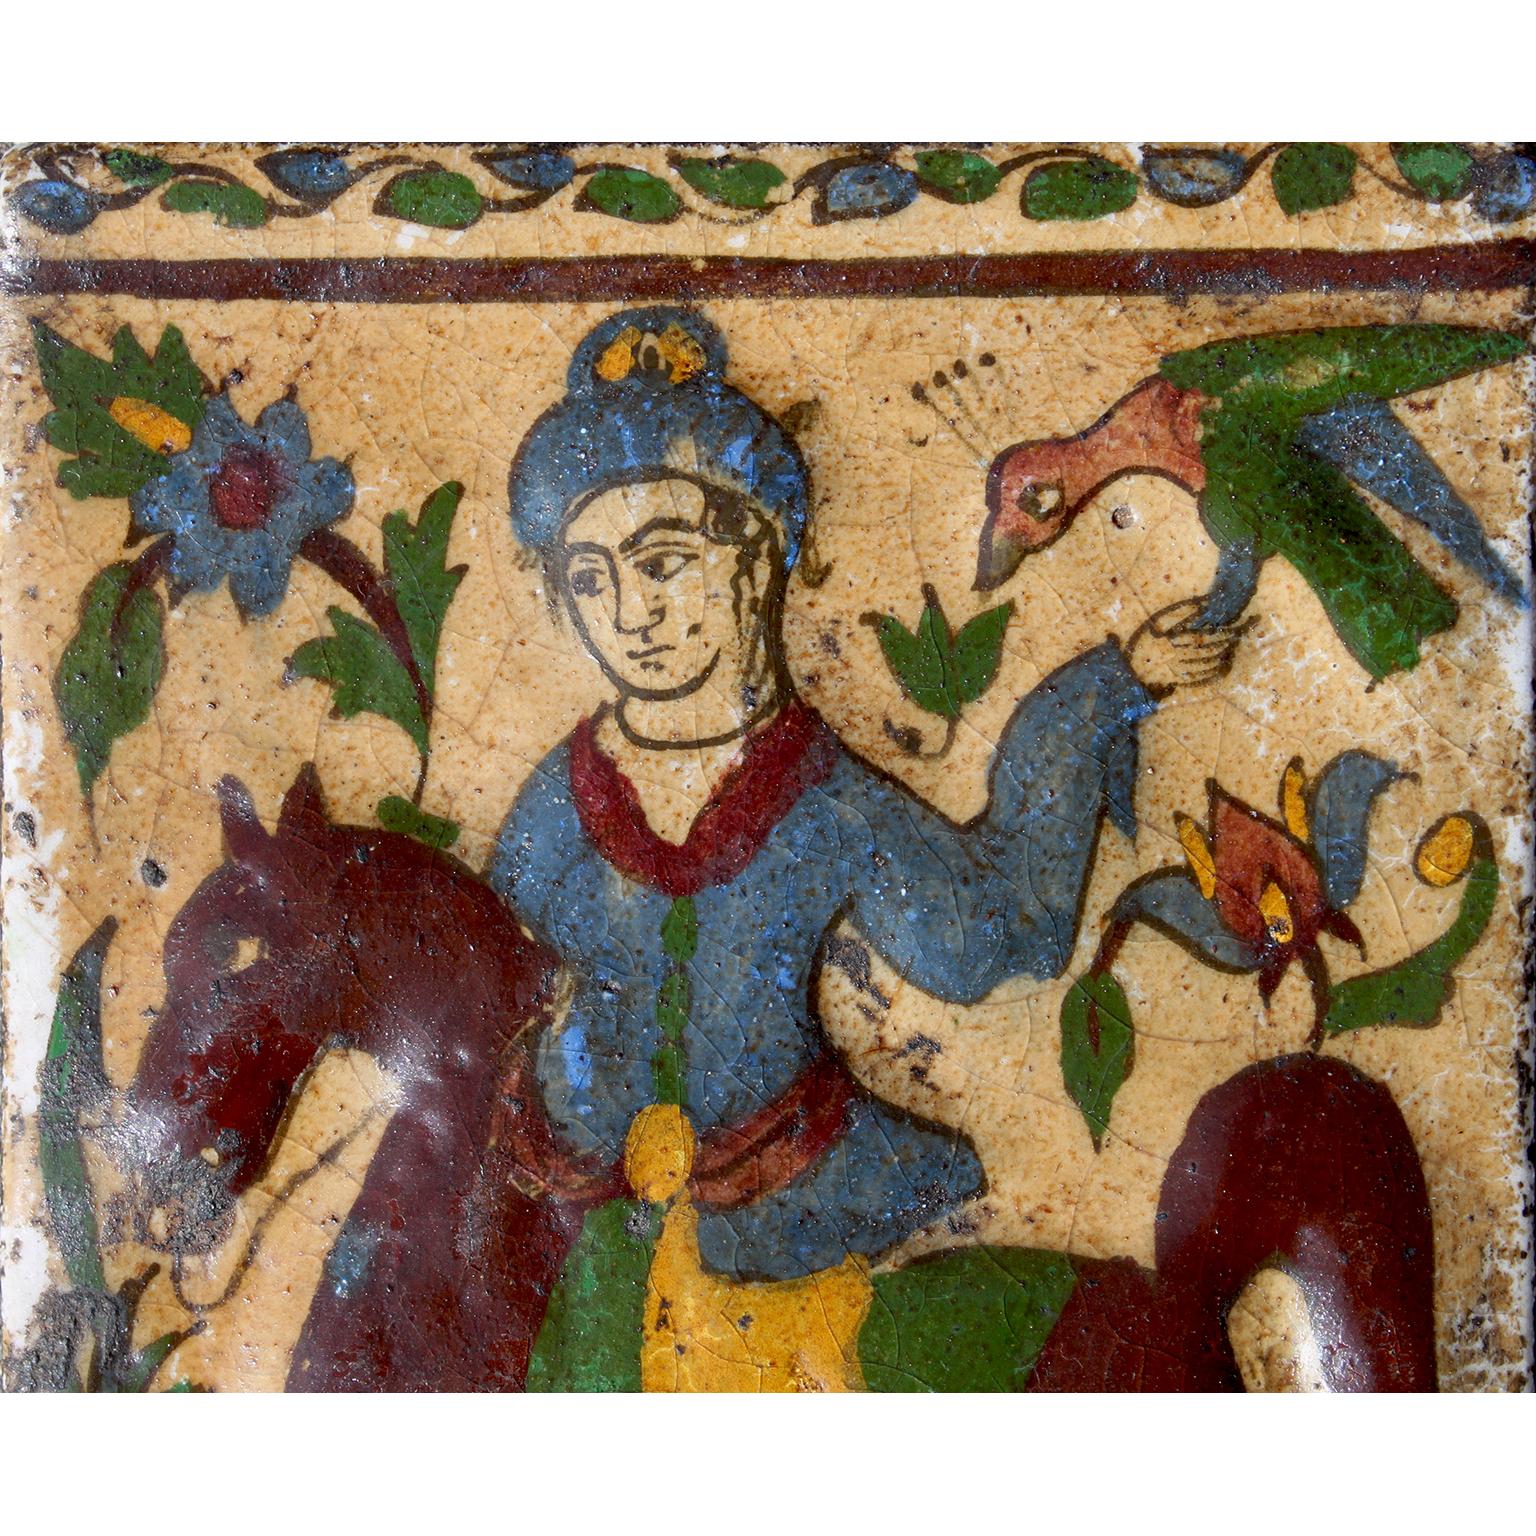 Charmant carreau en poterie moulée à glaçure Qajar, représentant un fauconnier ou Bazdar à cheval tenant un faucon parmi des fleurs et des feuilles, sur un fond jaune, Téhéran, Perse du Nord. Âge réel inconnu, mais probablement entre 1880 et